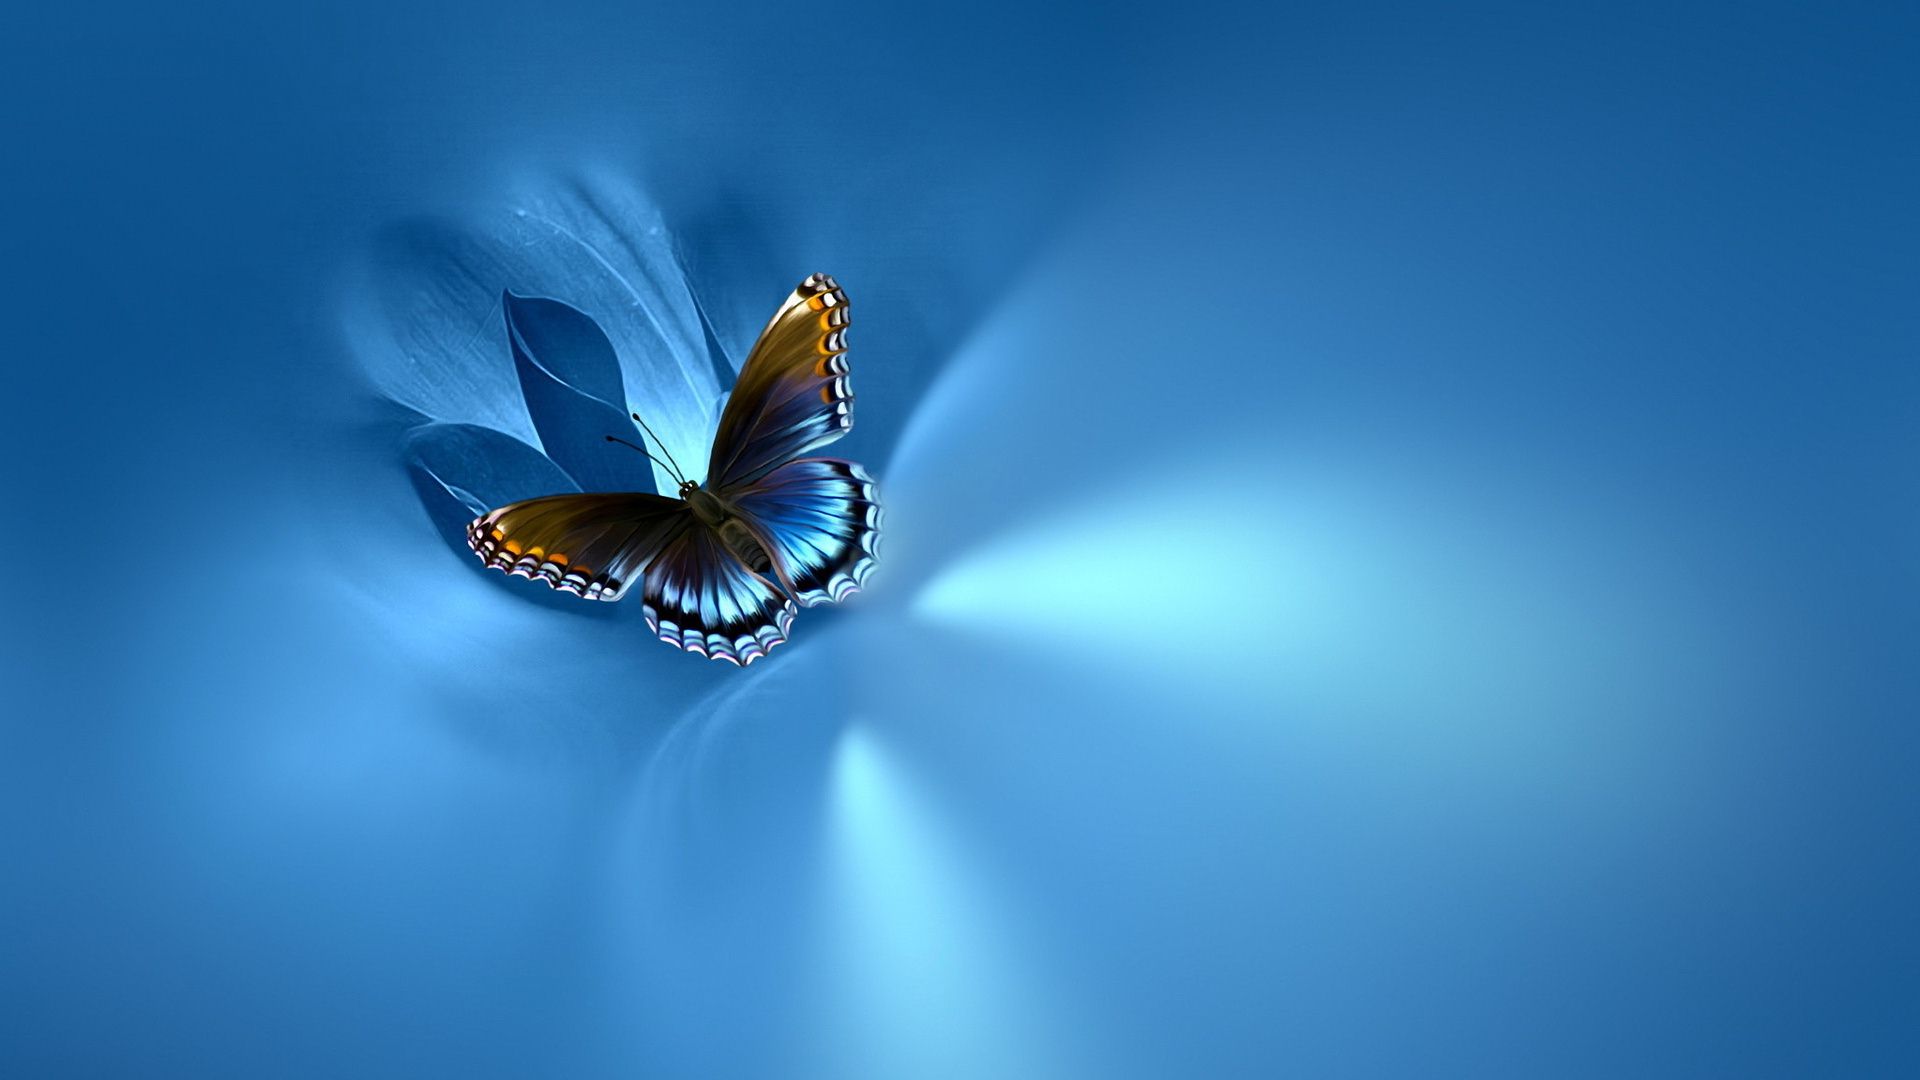 Free Light Blue Butterfly Wallpaper  Download in JPG  Templatenet